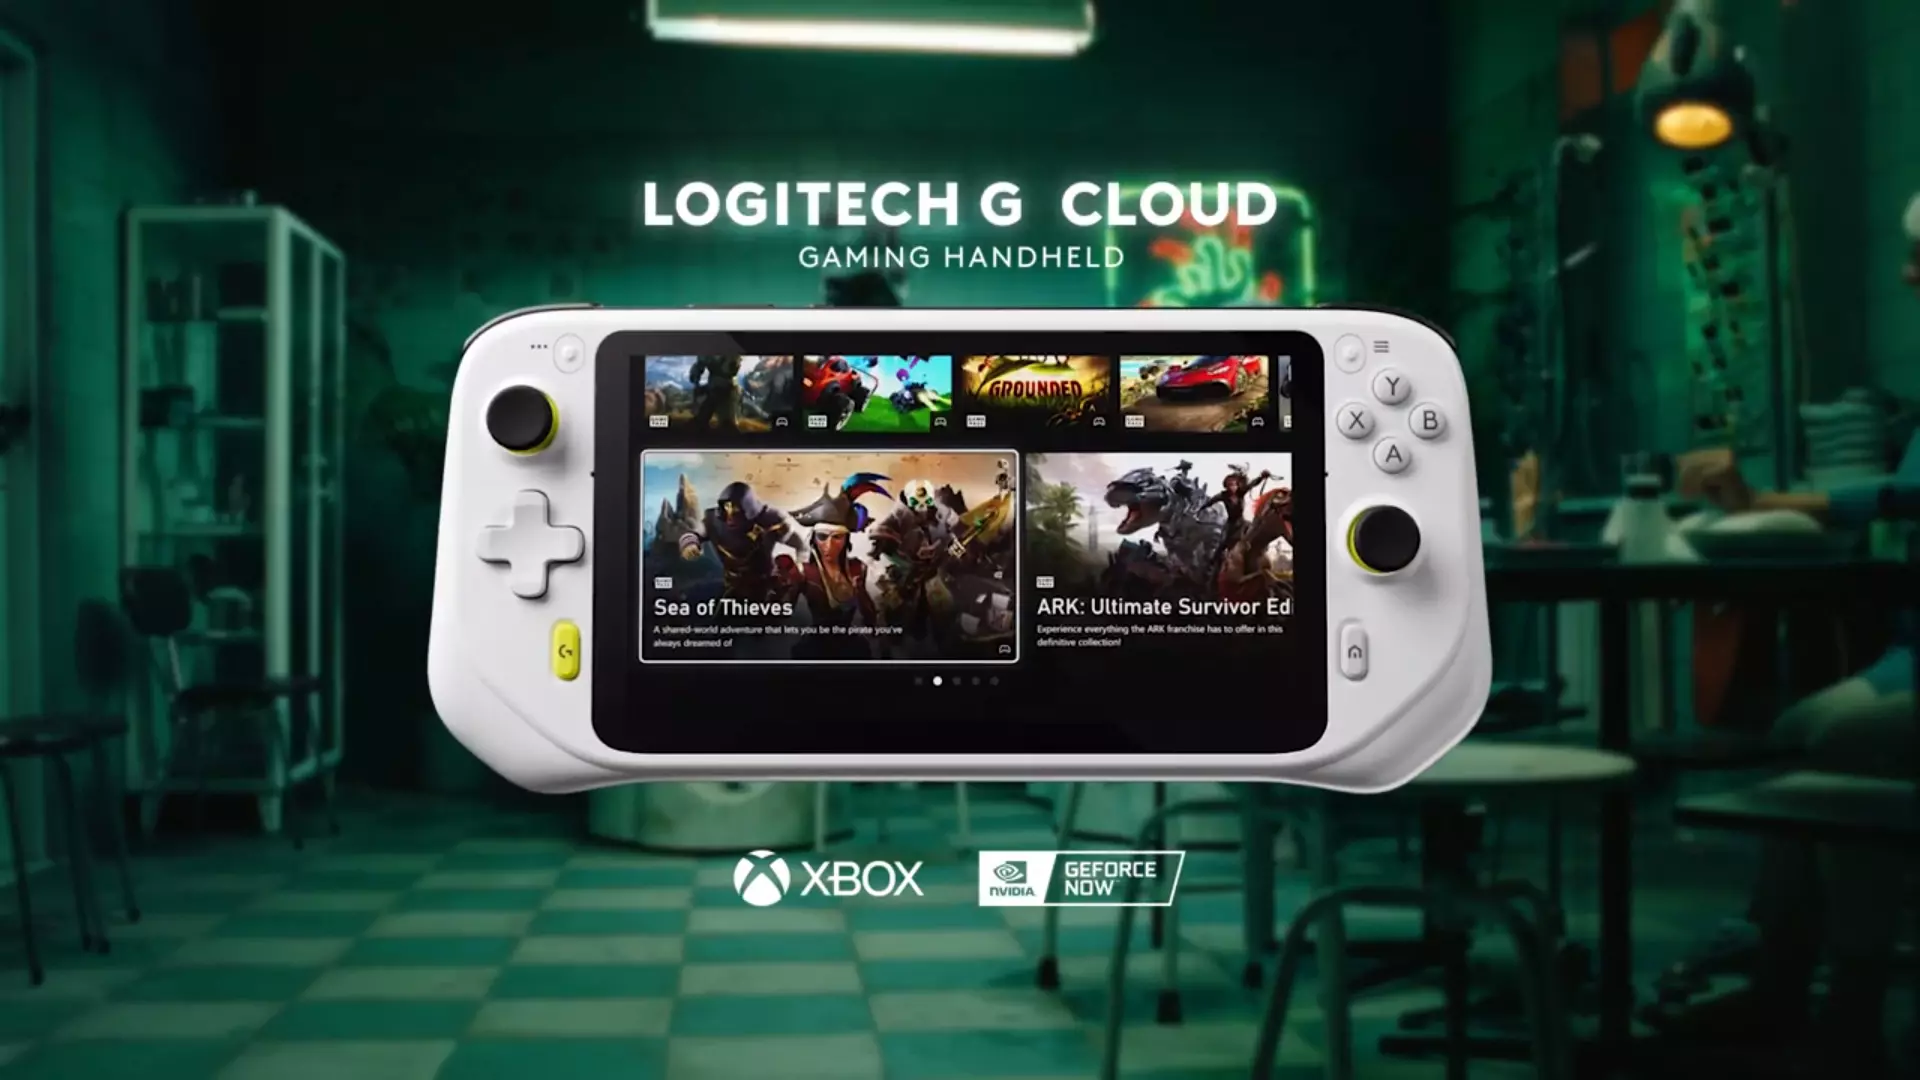 Logitech G portátil para jogos em nuvem